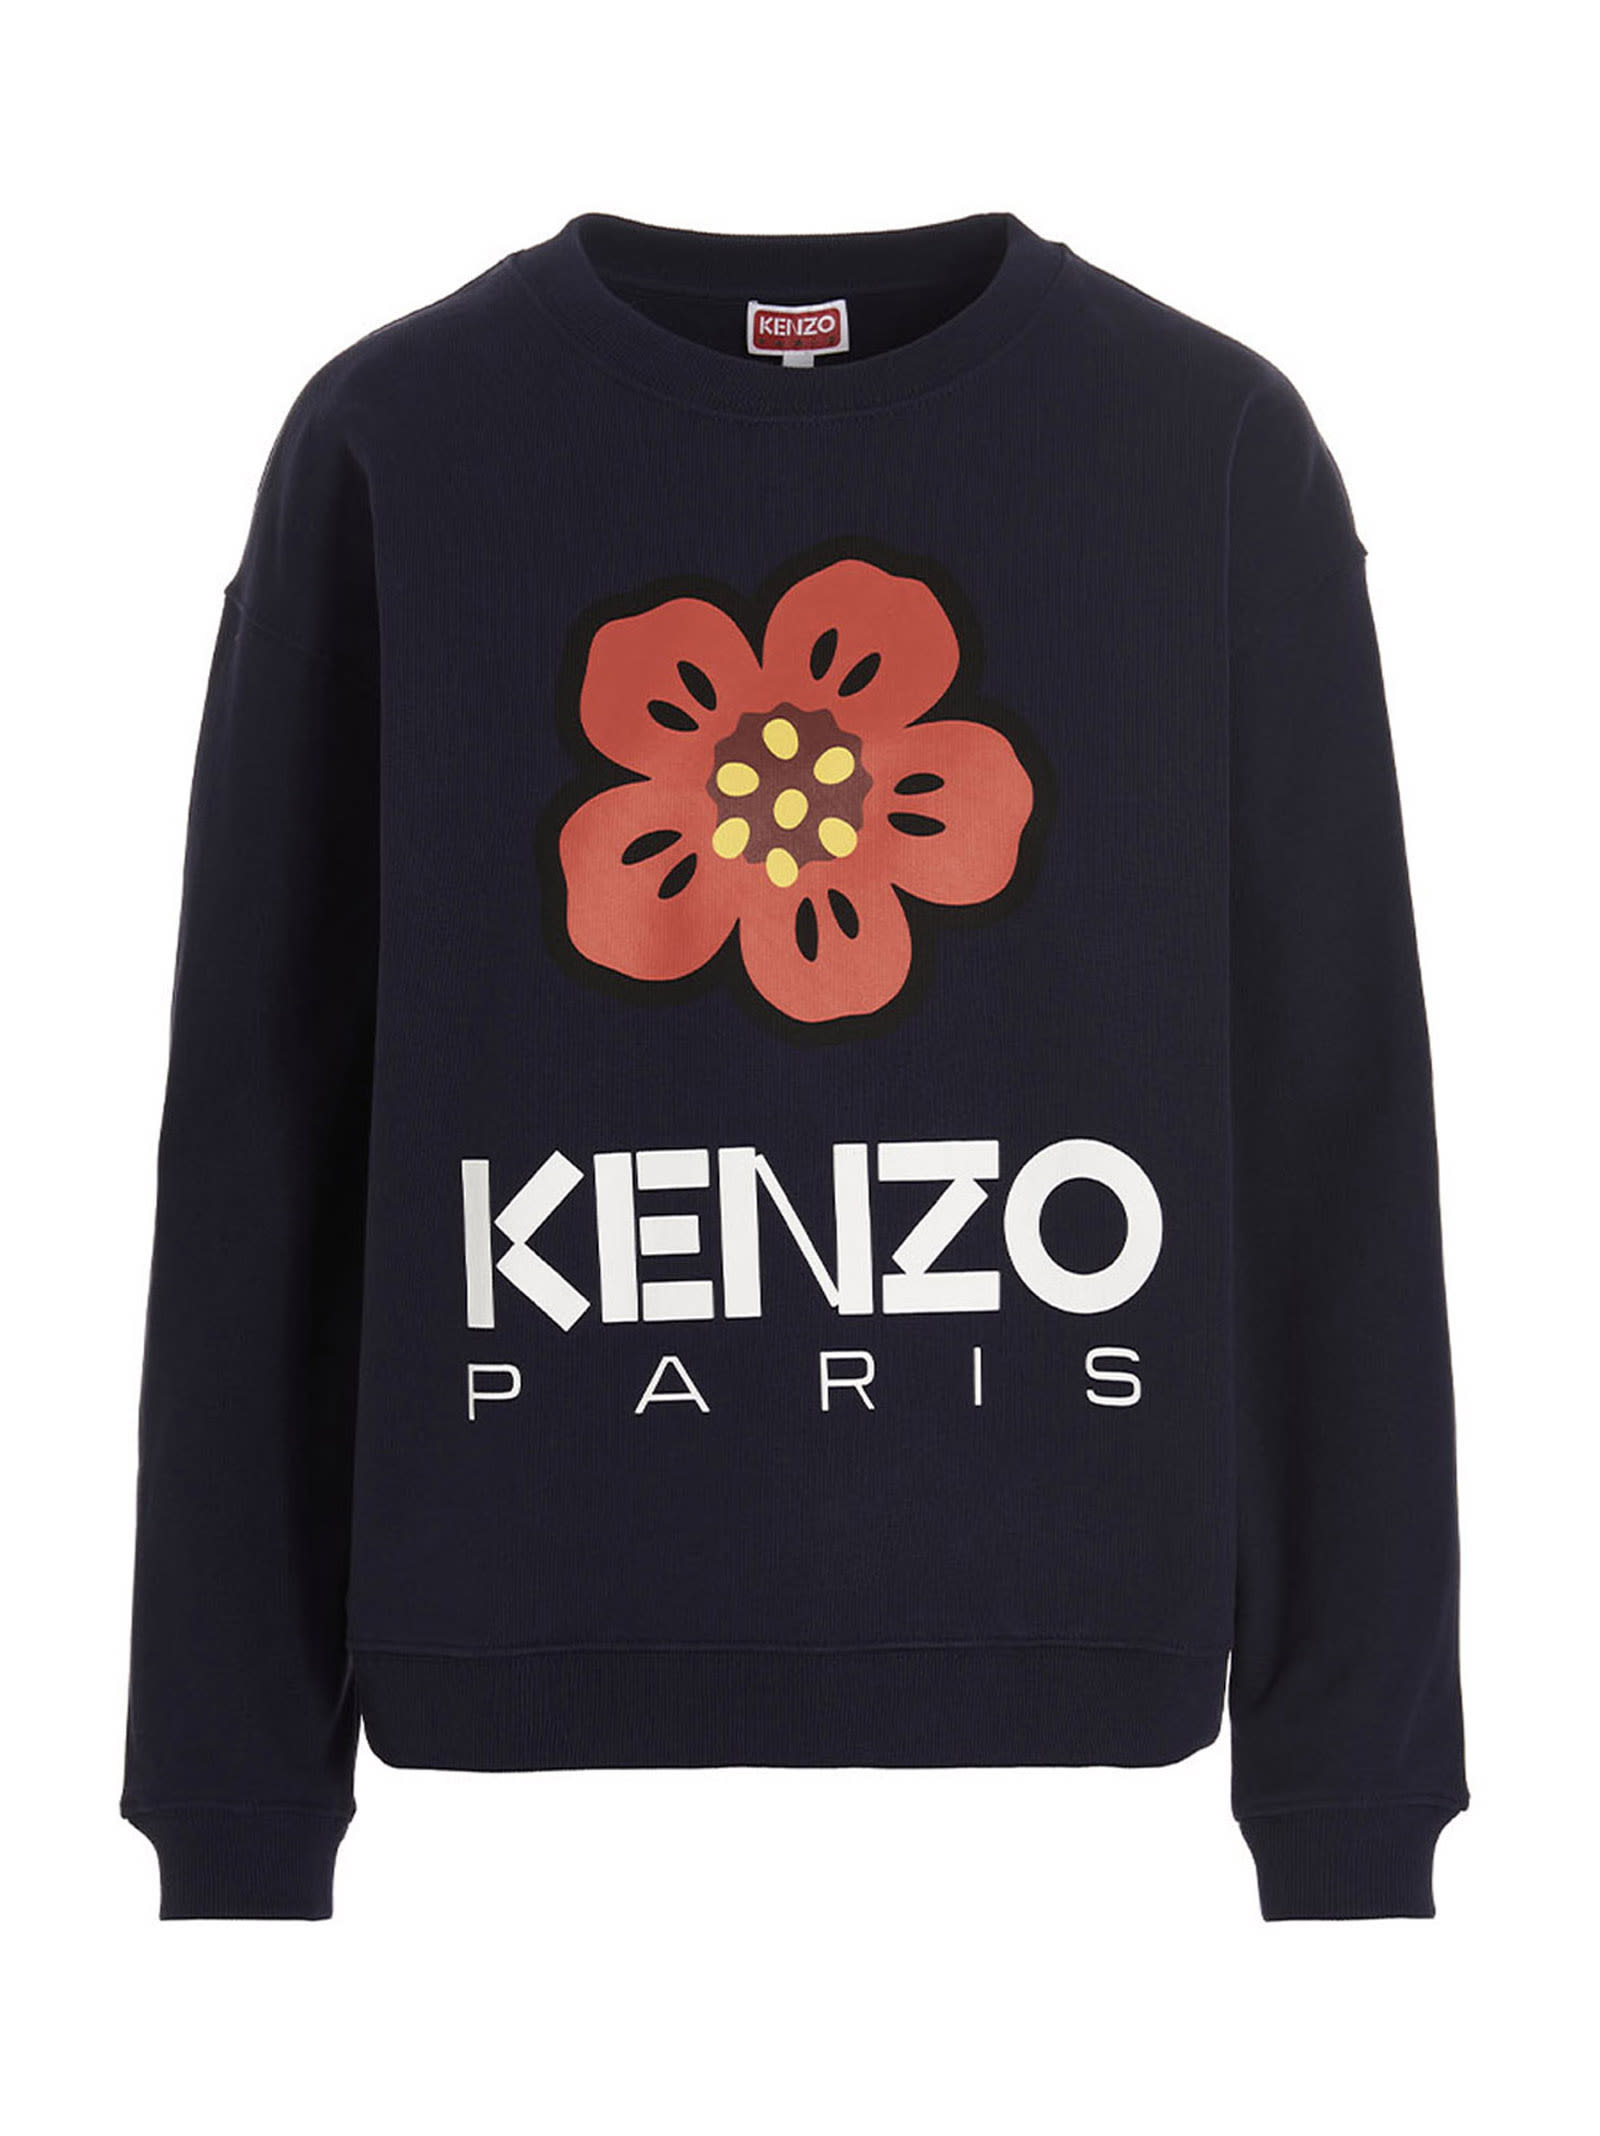 Kenzo Paris Sweatshirt In Metallic